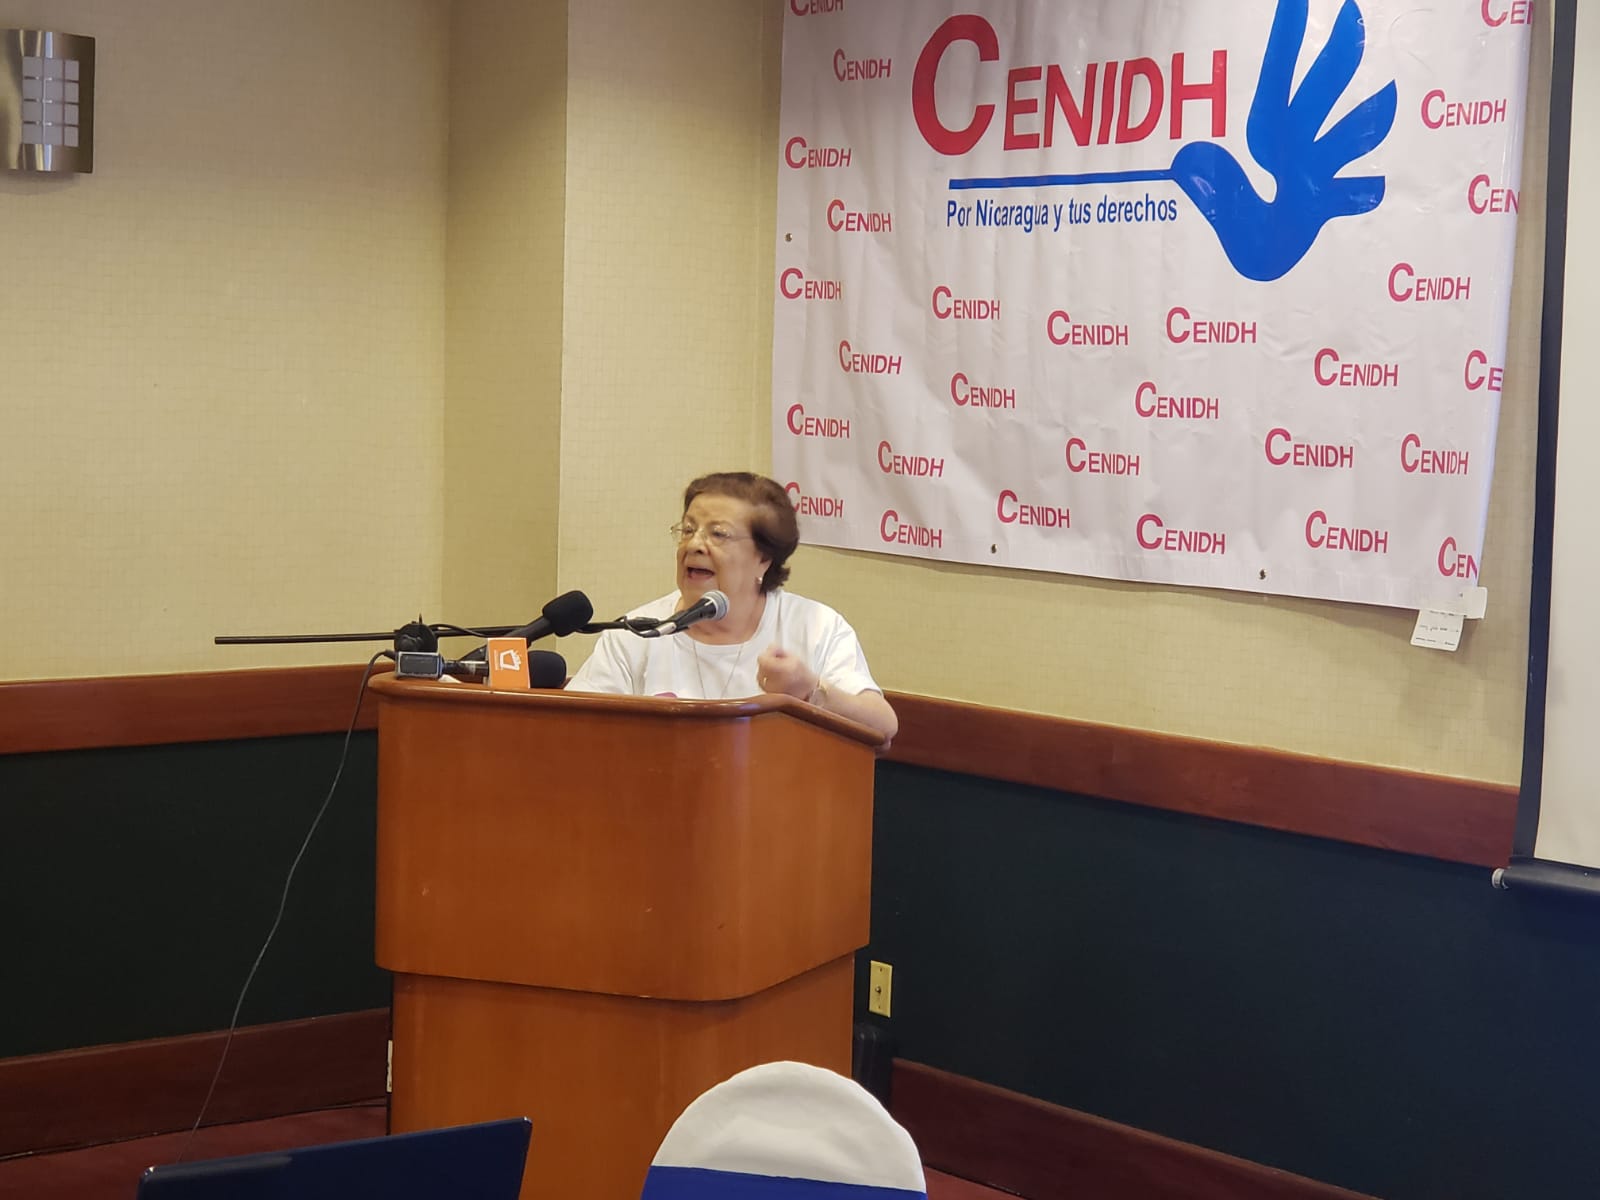 Presidenta del Cenidh, Vilma Núñez durante la presentación del Informe bimestral "Así resiste Nicaragua la represión". Foto: G. Shiffman / Artículo 66